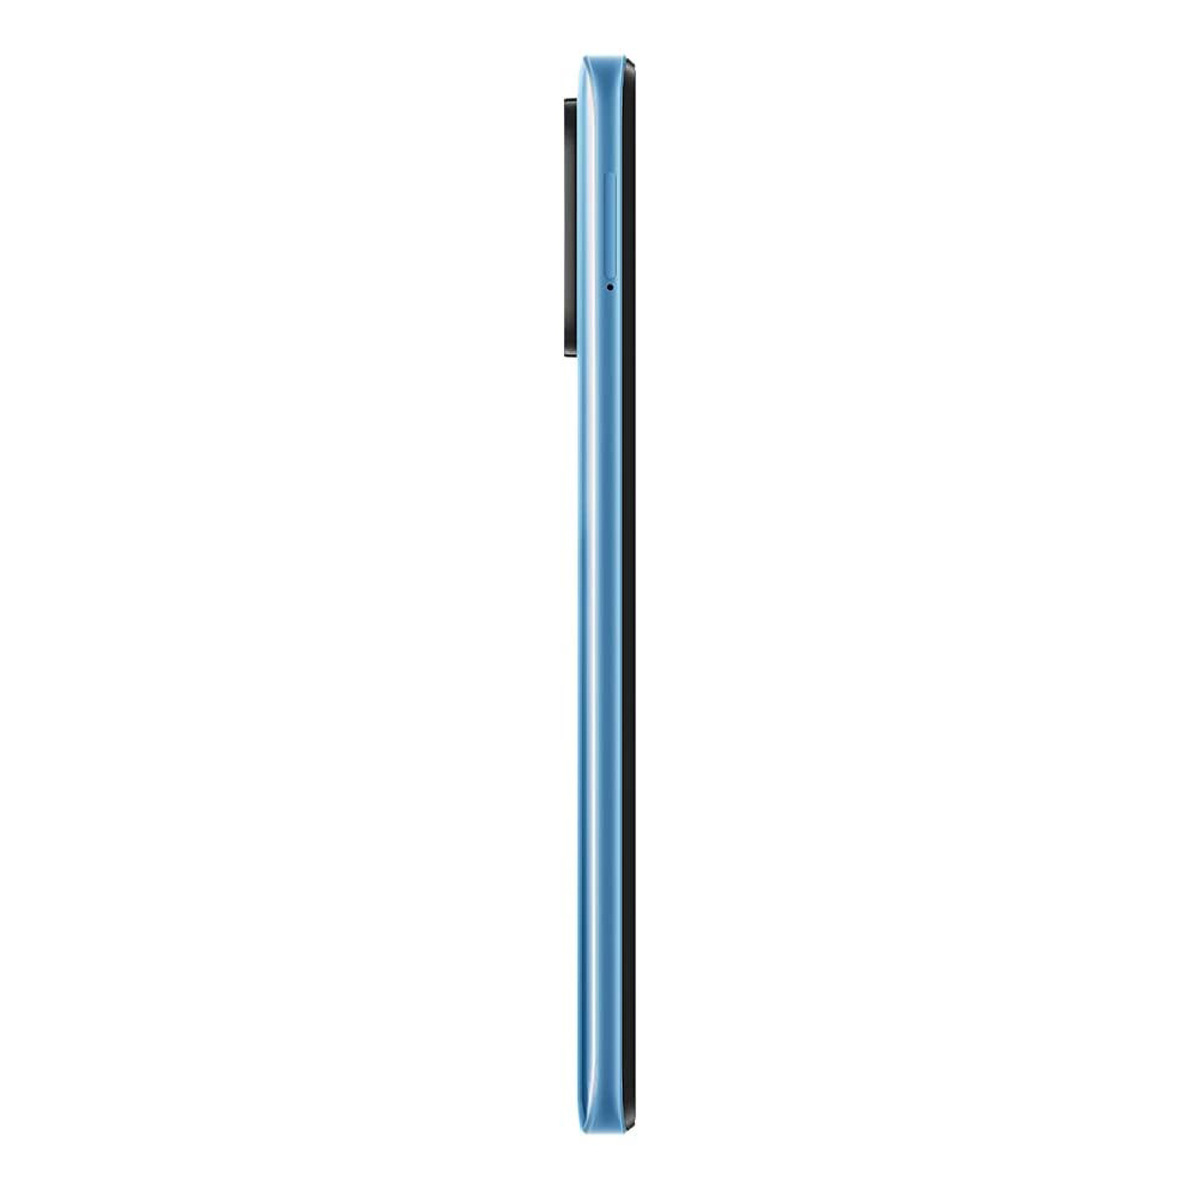 شاومي ريدمي 2022 10 4G أزرق,(أزرق بحري)